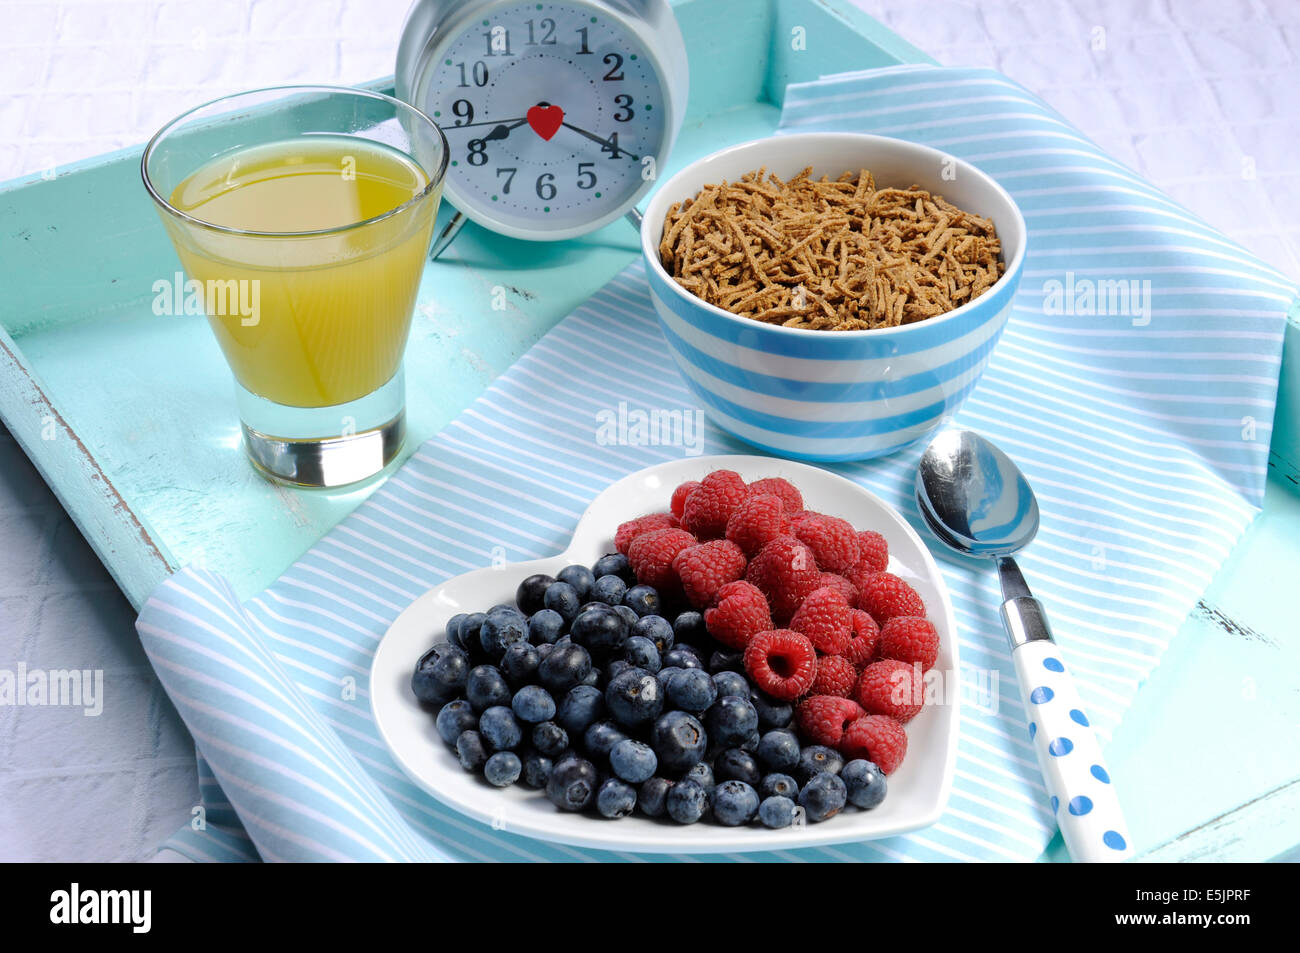 Dieta saludable Una dieta alta en fibra con desayuno tazón de cereal de salvado y bayas de color blanco en la placa del corazón aqua blue bandeja vintage Foto de stock